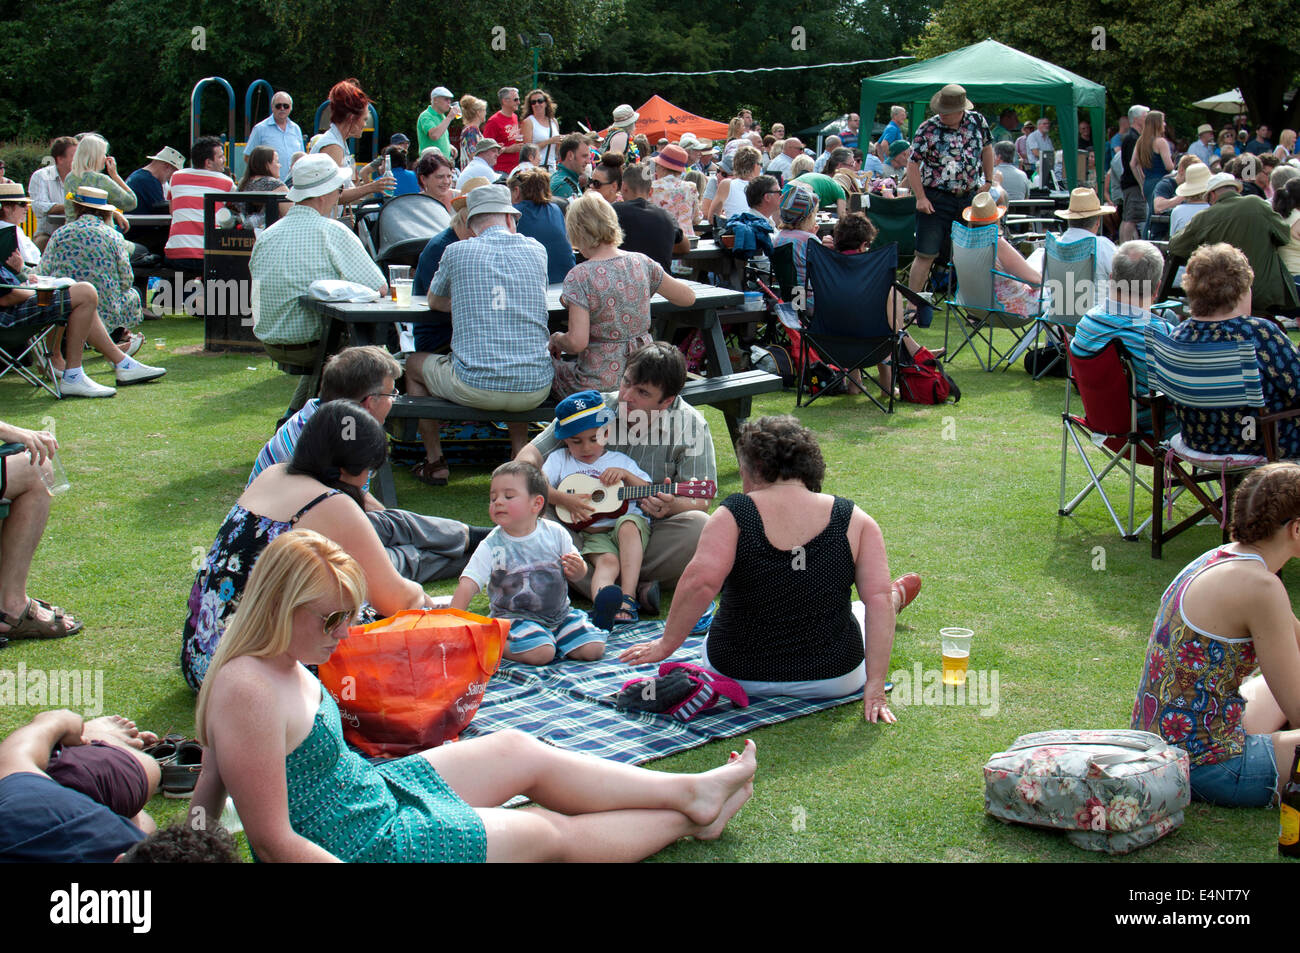 People at the Leamington Spa Ukulele Festival, UK Stock Photo